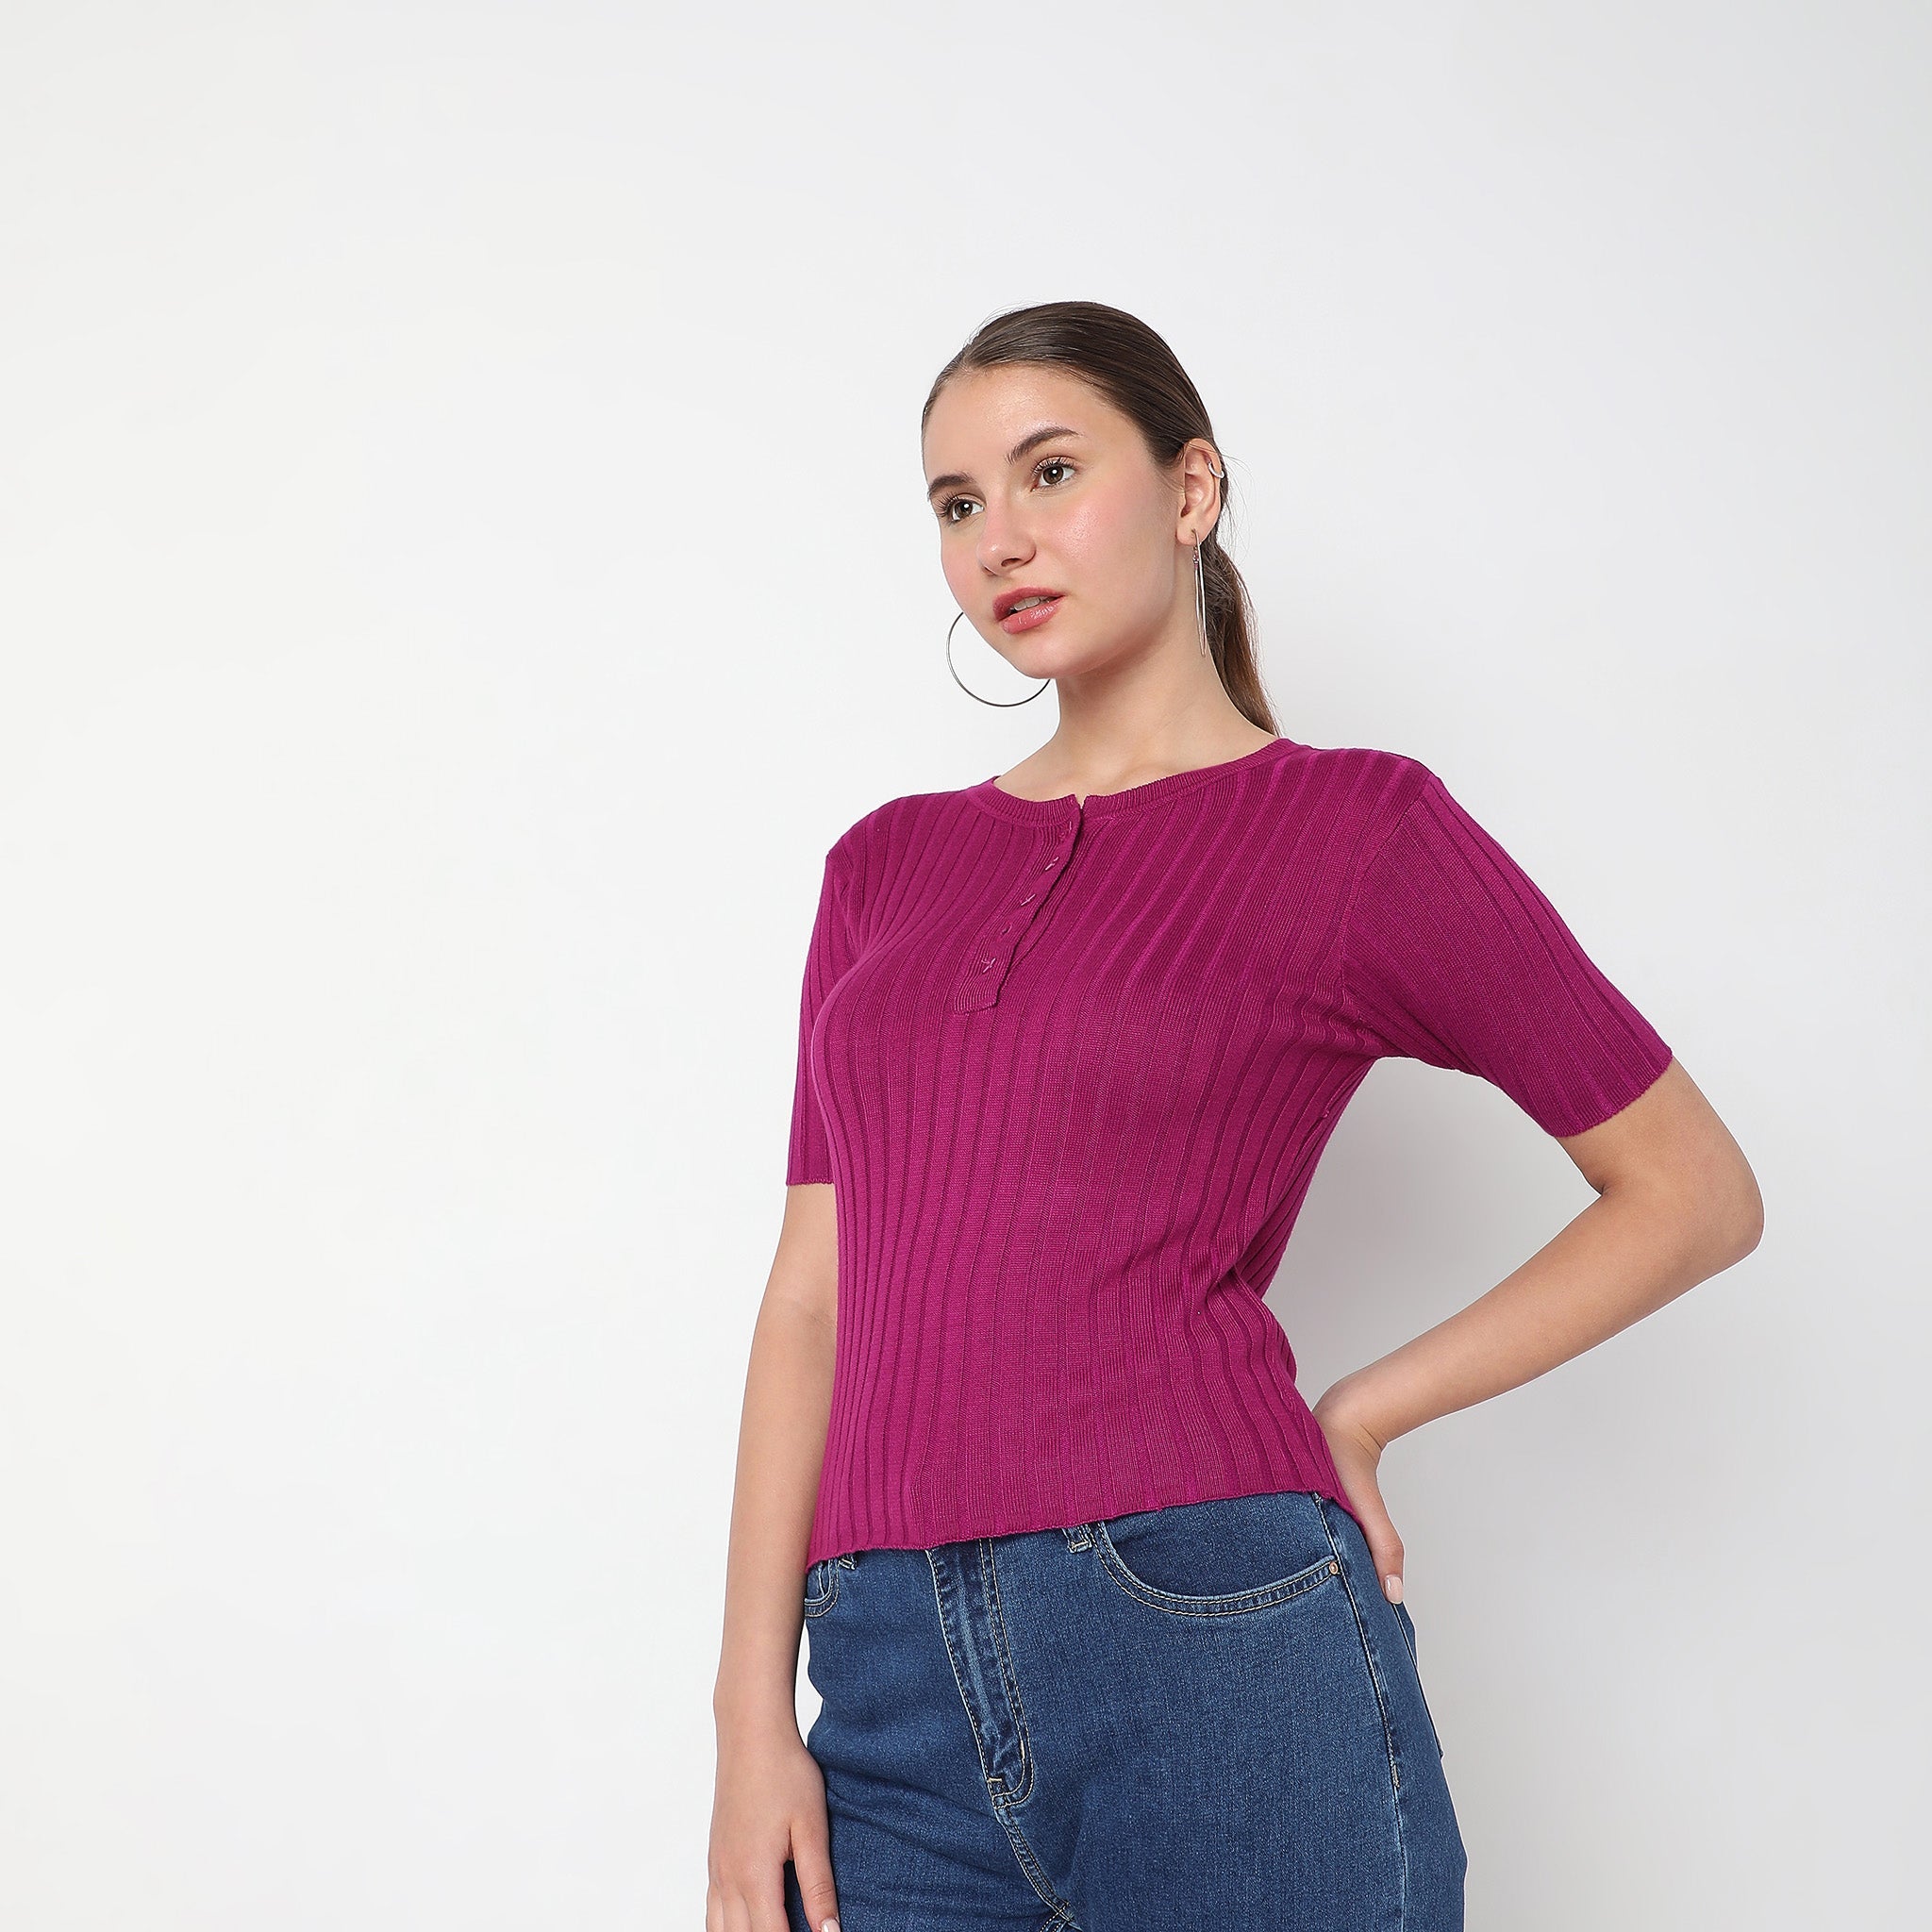 Women Wearing Slim Fit Solid Sweater